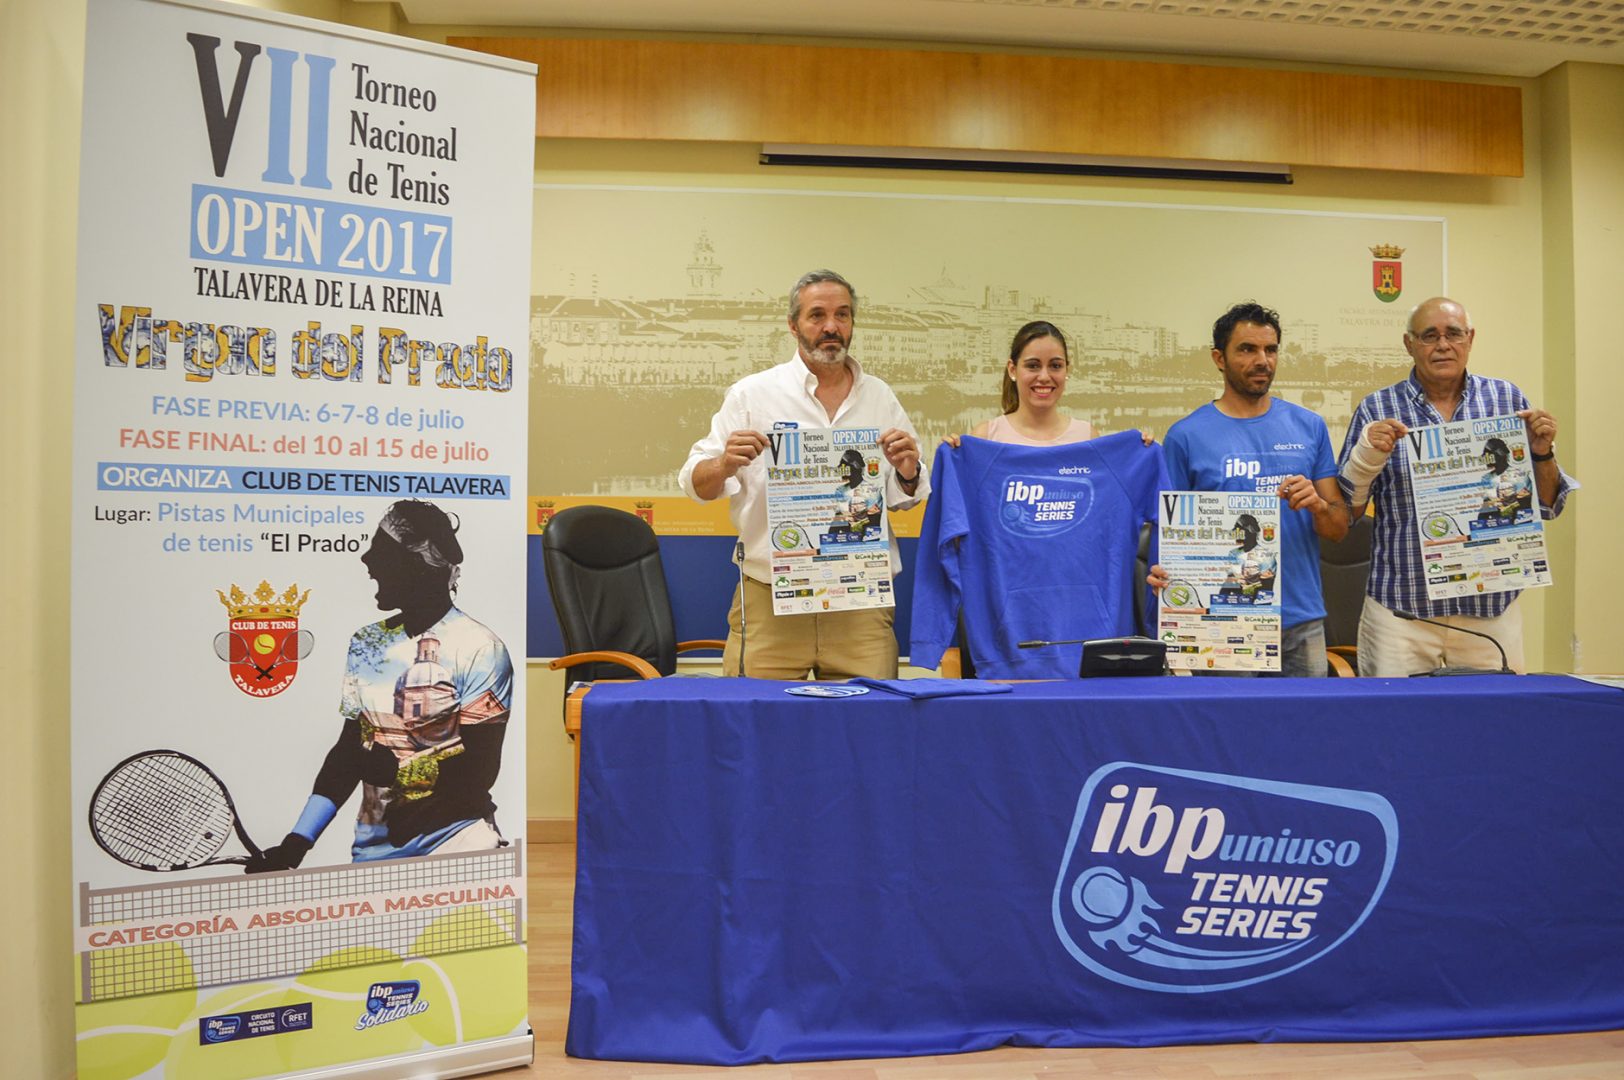 Presentacion del VII Torneo Nacional de Tenis Virgen del Prado 2017